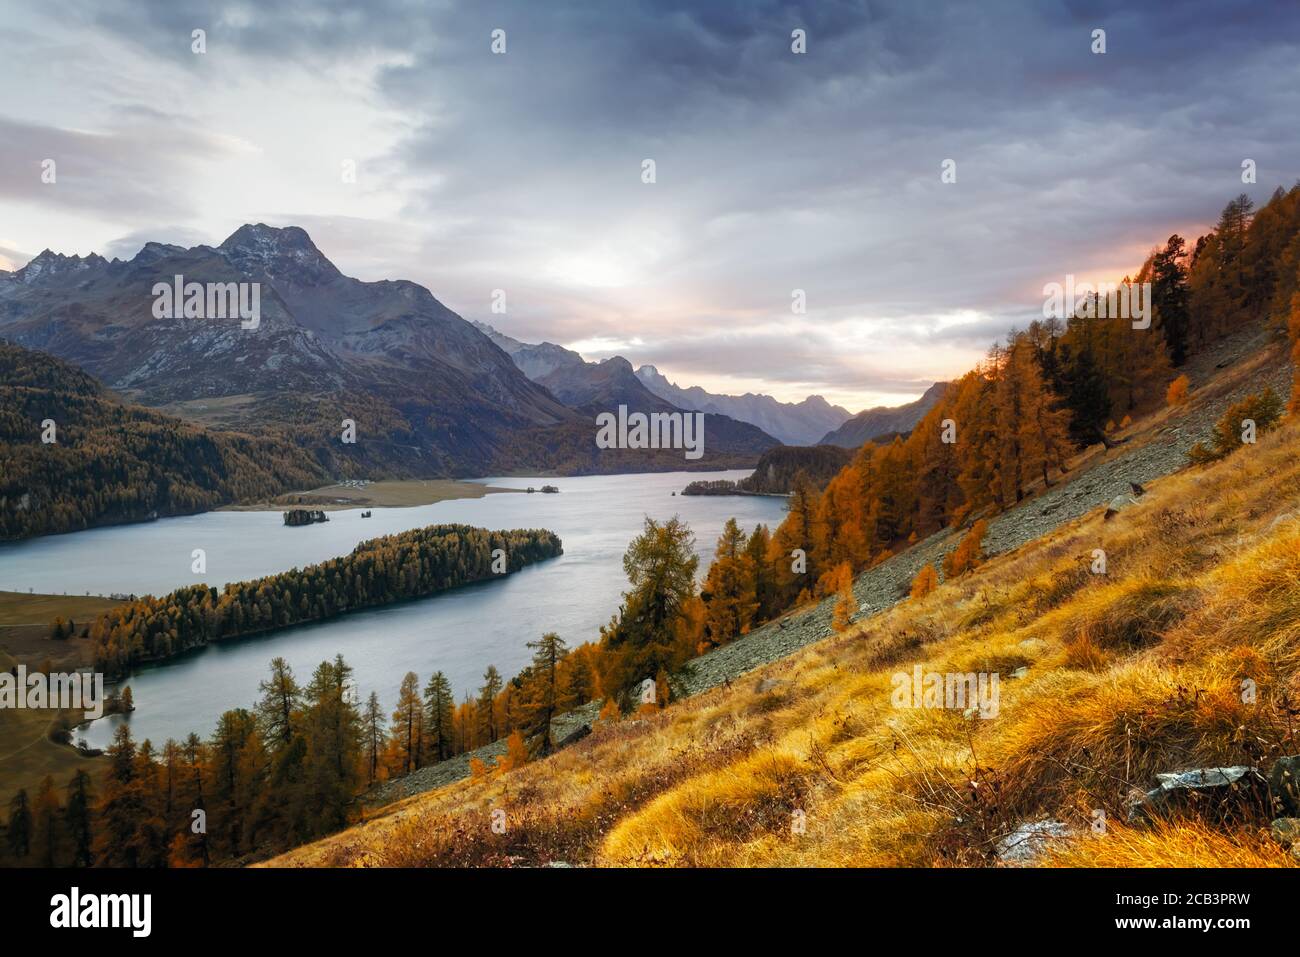 Vue magnifique sur le lac d'automne Sils (Silsersee) dans les montagnes des Alpes suisses. Forêt colorée avec mélèze d'orange. Suisse, région de Maloja, haute Engadine. Photographie de paysage Banque D'Images